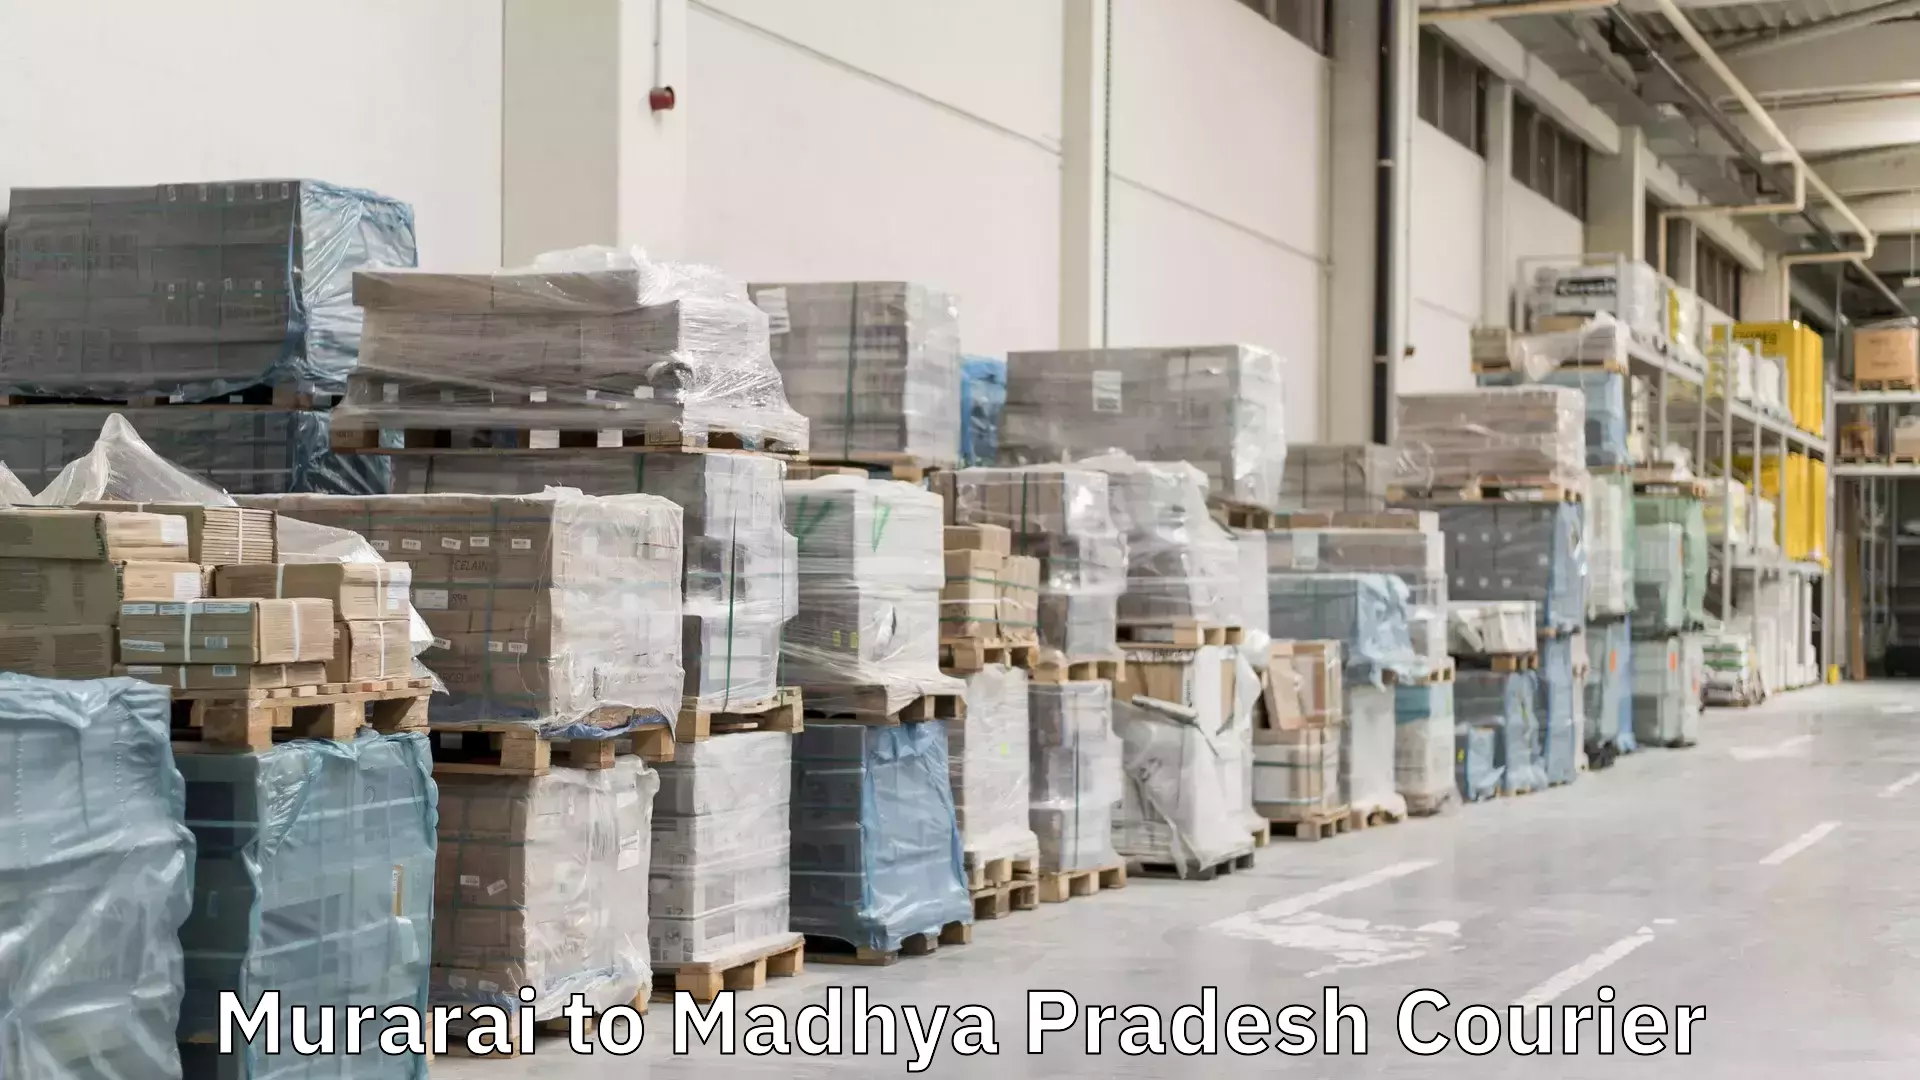 Global courier networks Murarai to Madhya Pradesh